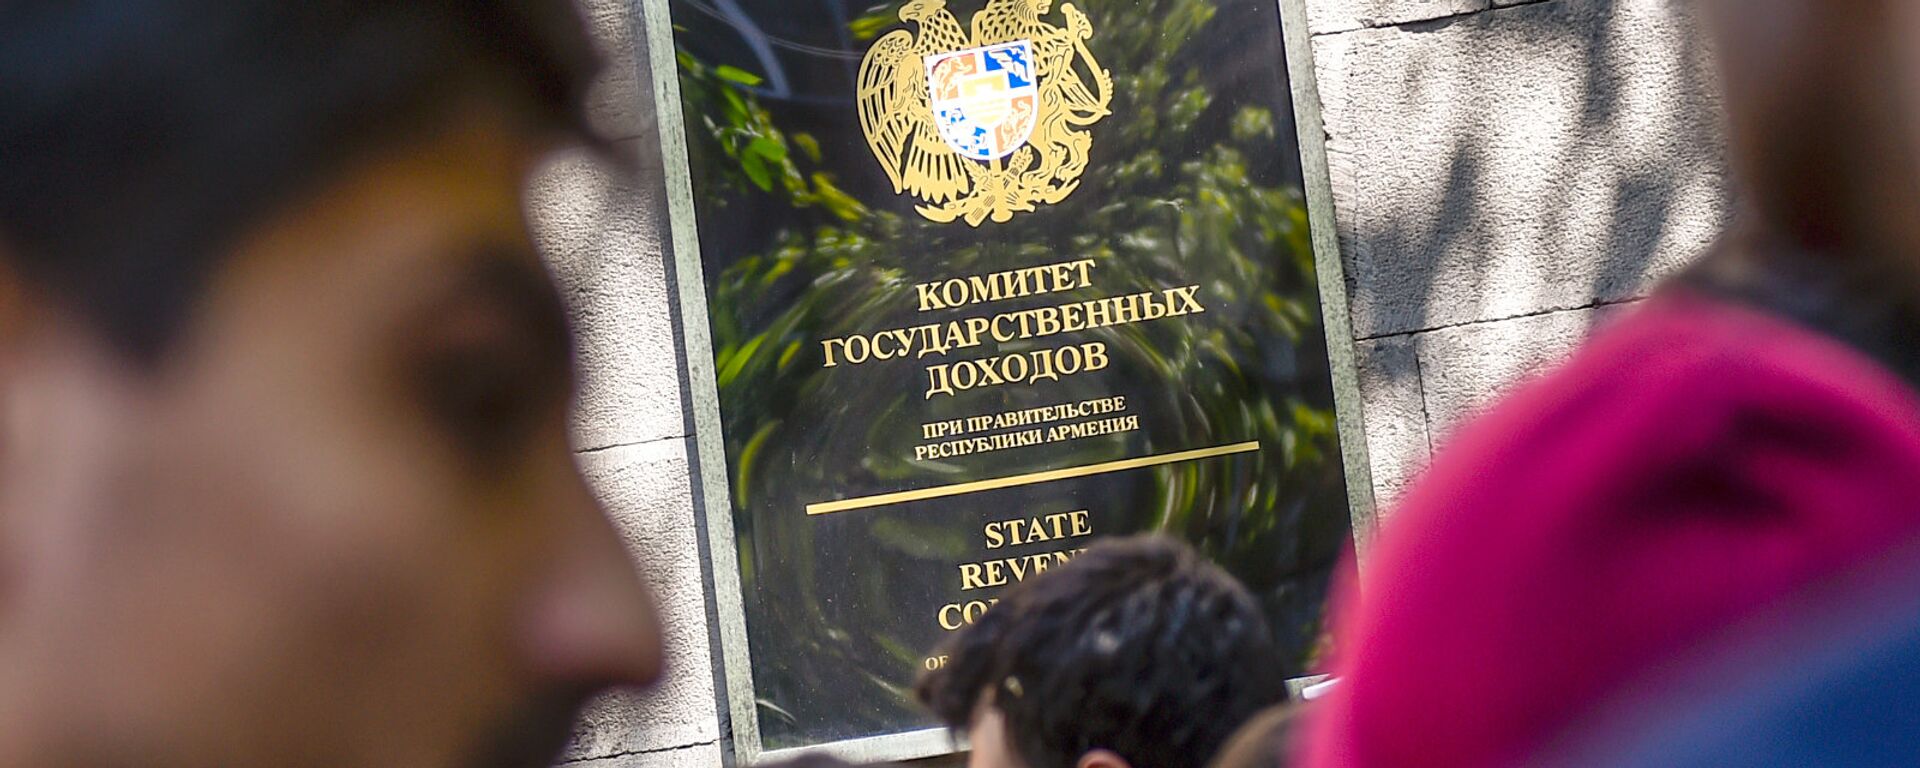 Активисты заблокировали вход в здание Комитета гос.доходов (17 апреля 2018). Ереван - Sputnik Армения, 1920, 27.10.2021